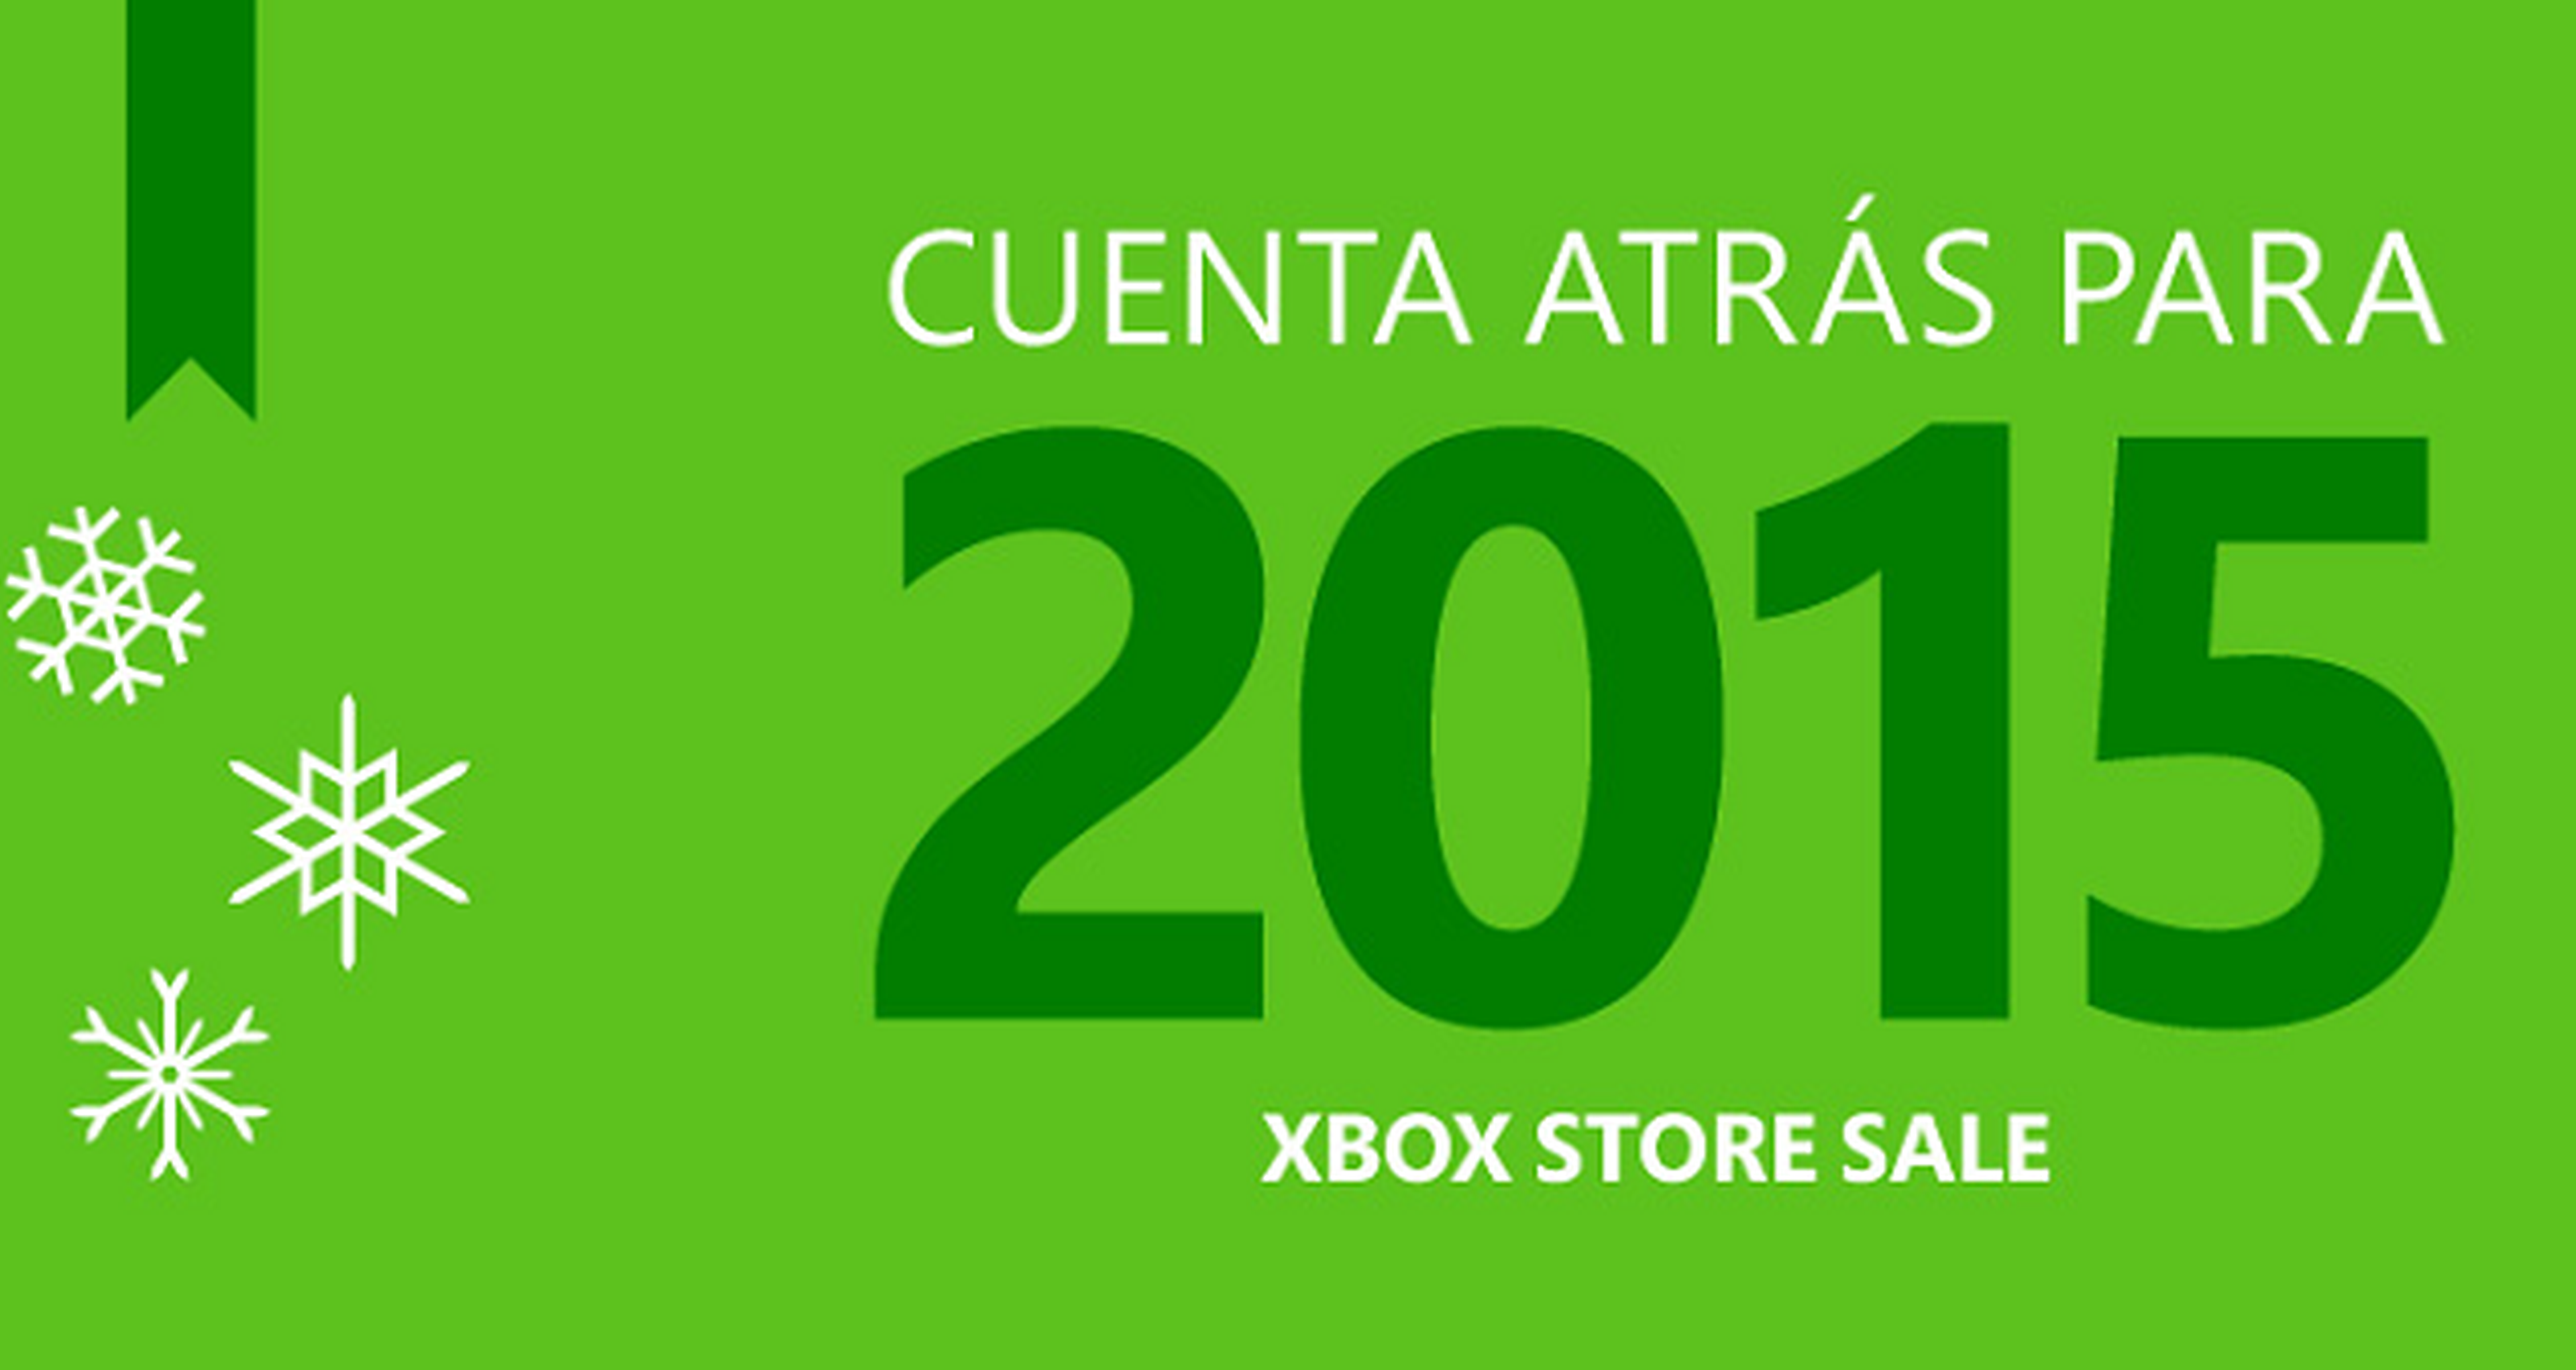 Las ofertas de Xbox siguen su cuenta atrás al 2015